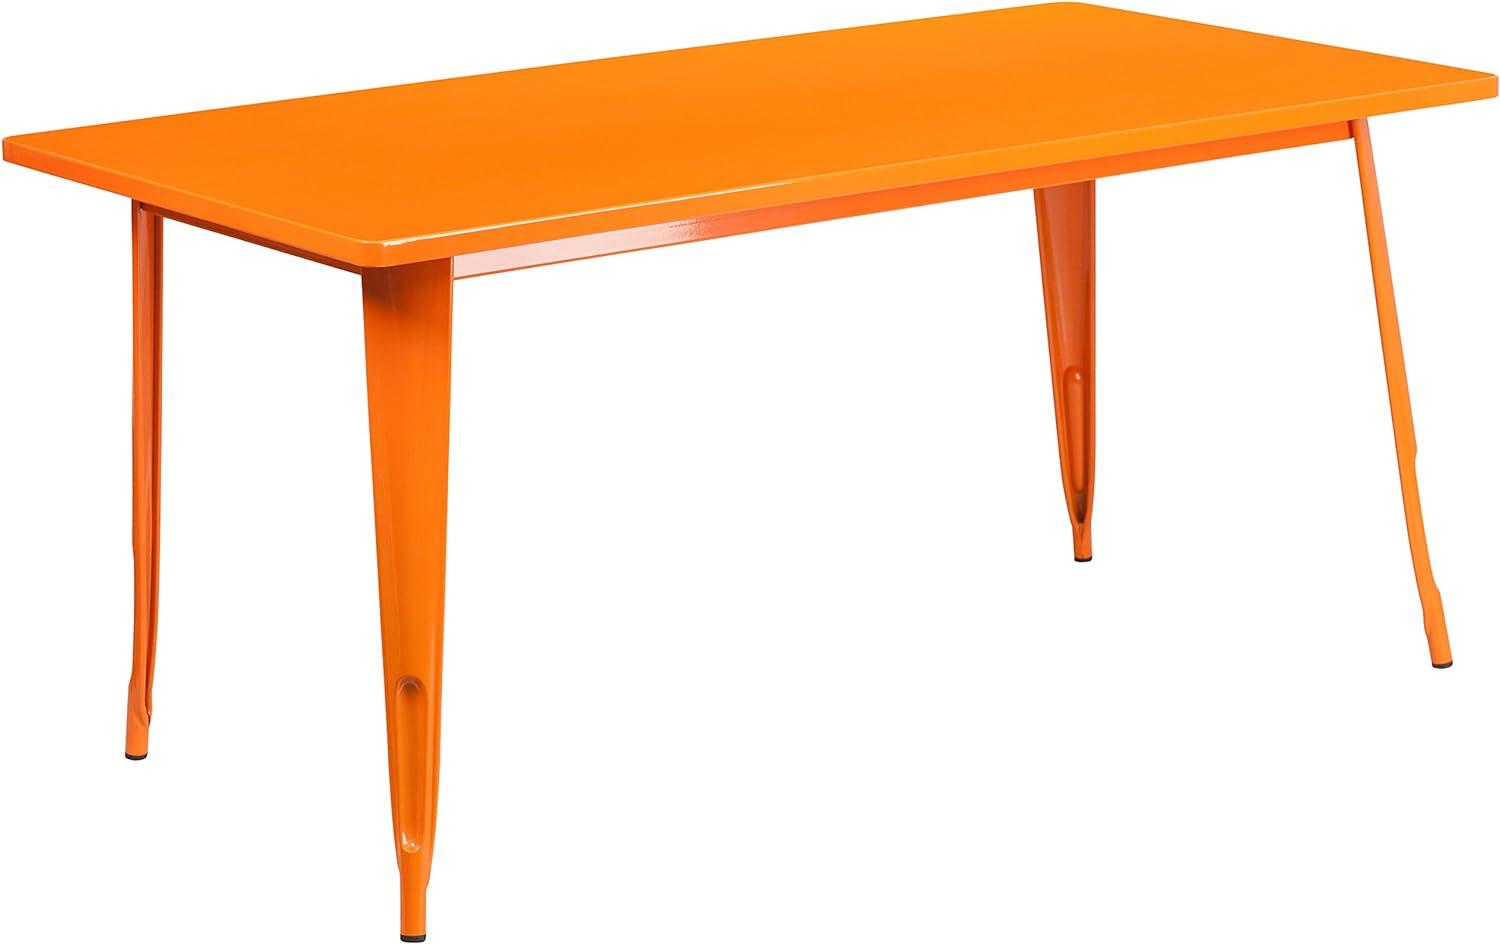 Flash Furniture Charis Commercial Grade 80 x 160 cm rechteckiger orangefarbener Metalltisch für drinnen und draußen Bild 1